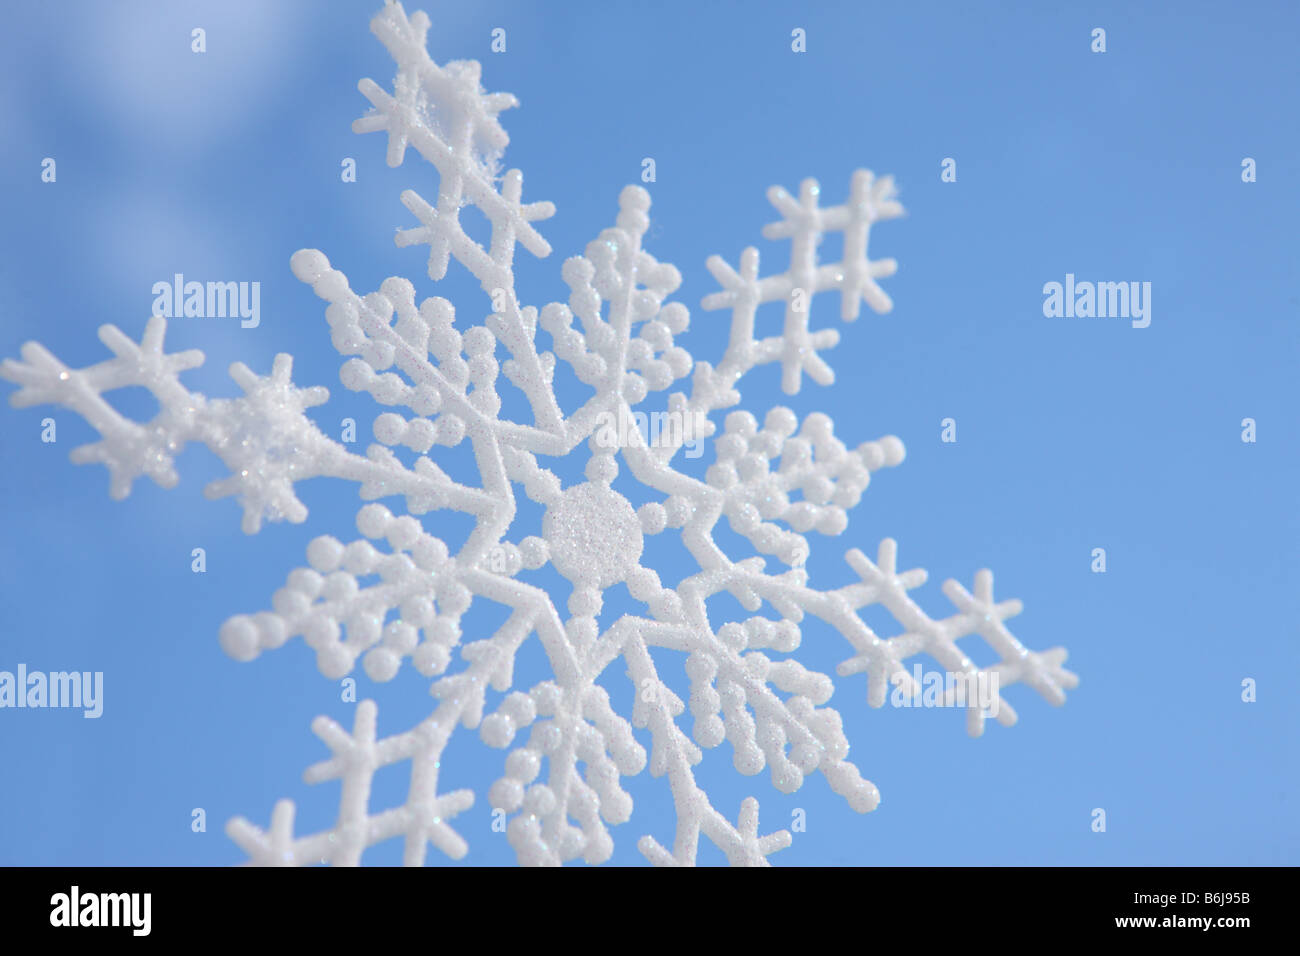 Adorno de copo de nieve contra el azul cielo de invierno Foto de stock